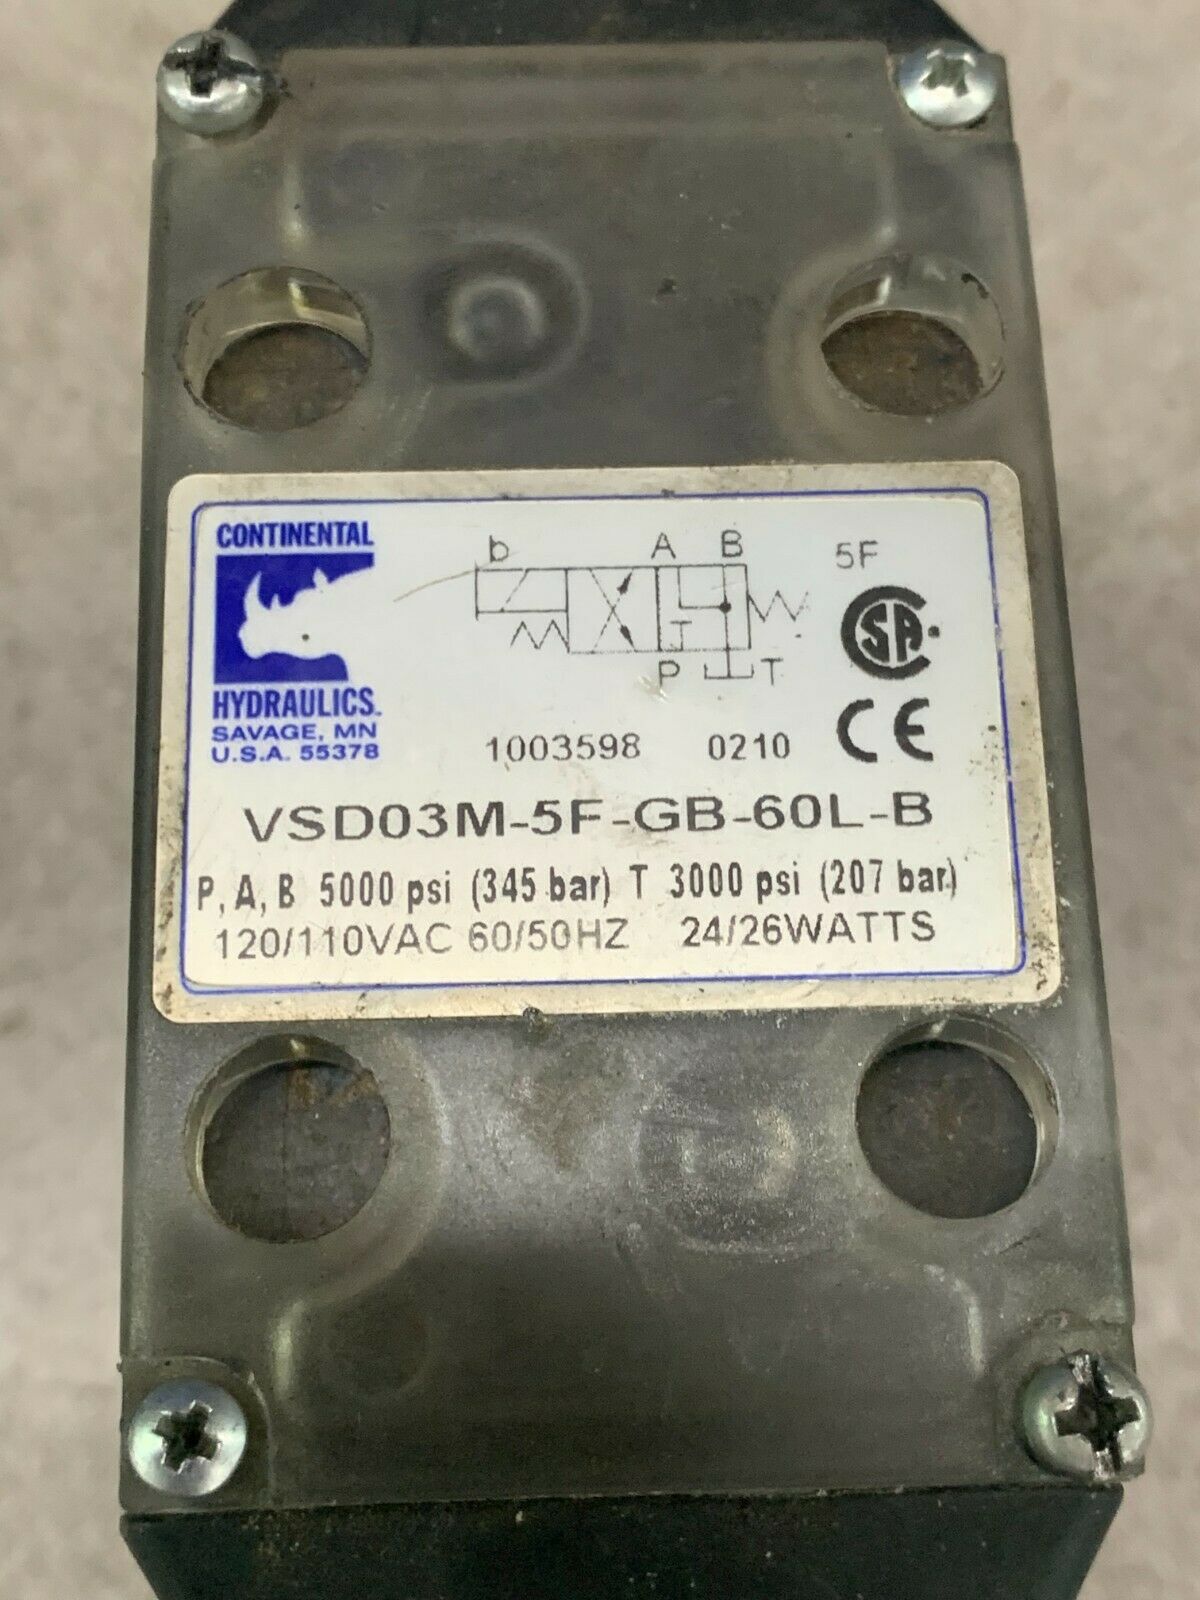 USED CONTINENTAL HYDRAULIC VALVE VSD03M-5F-GB-60L-B